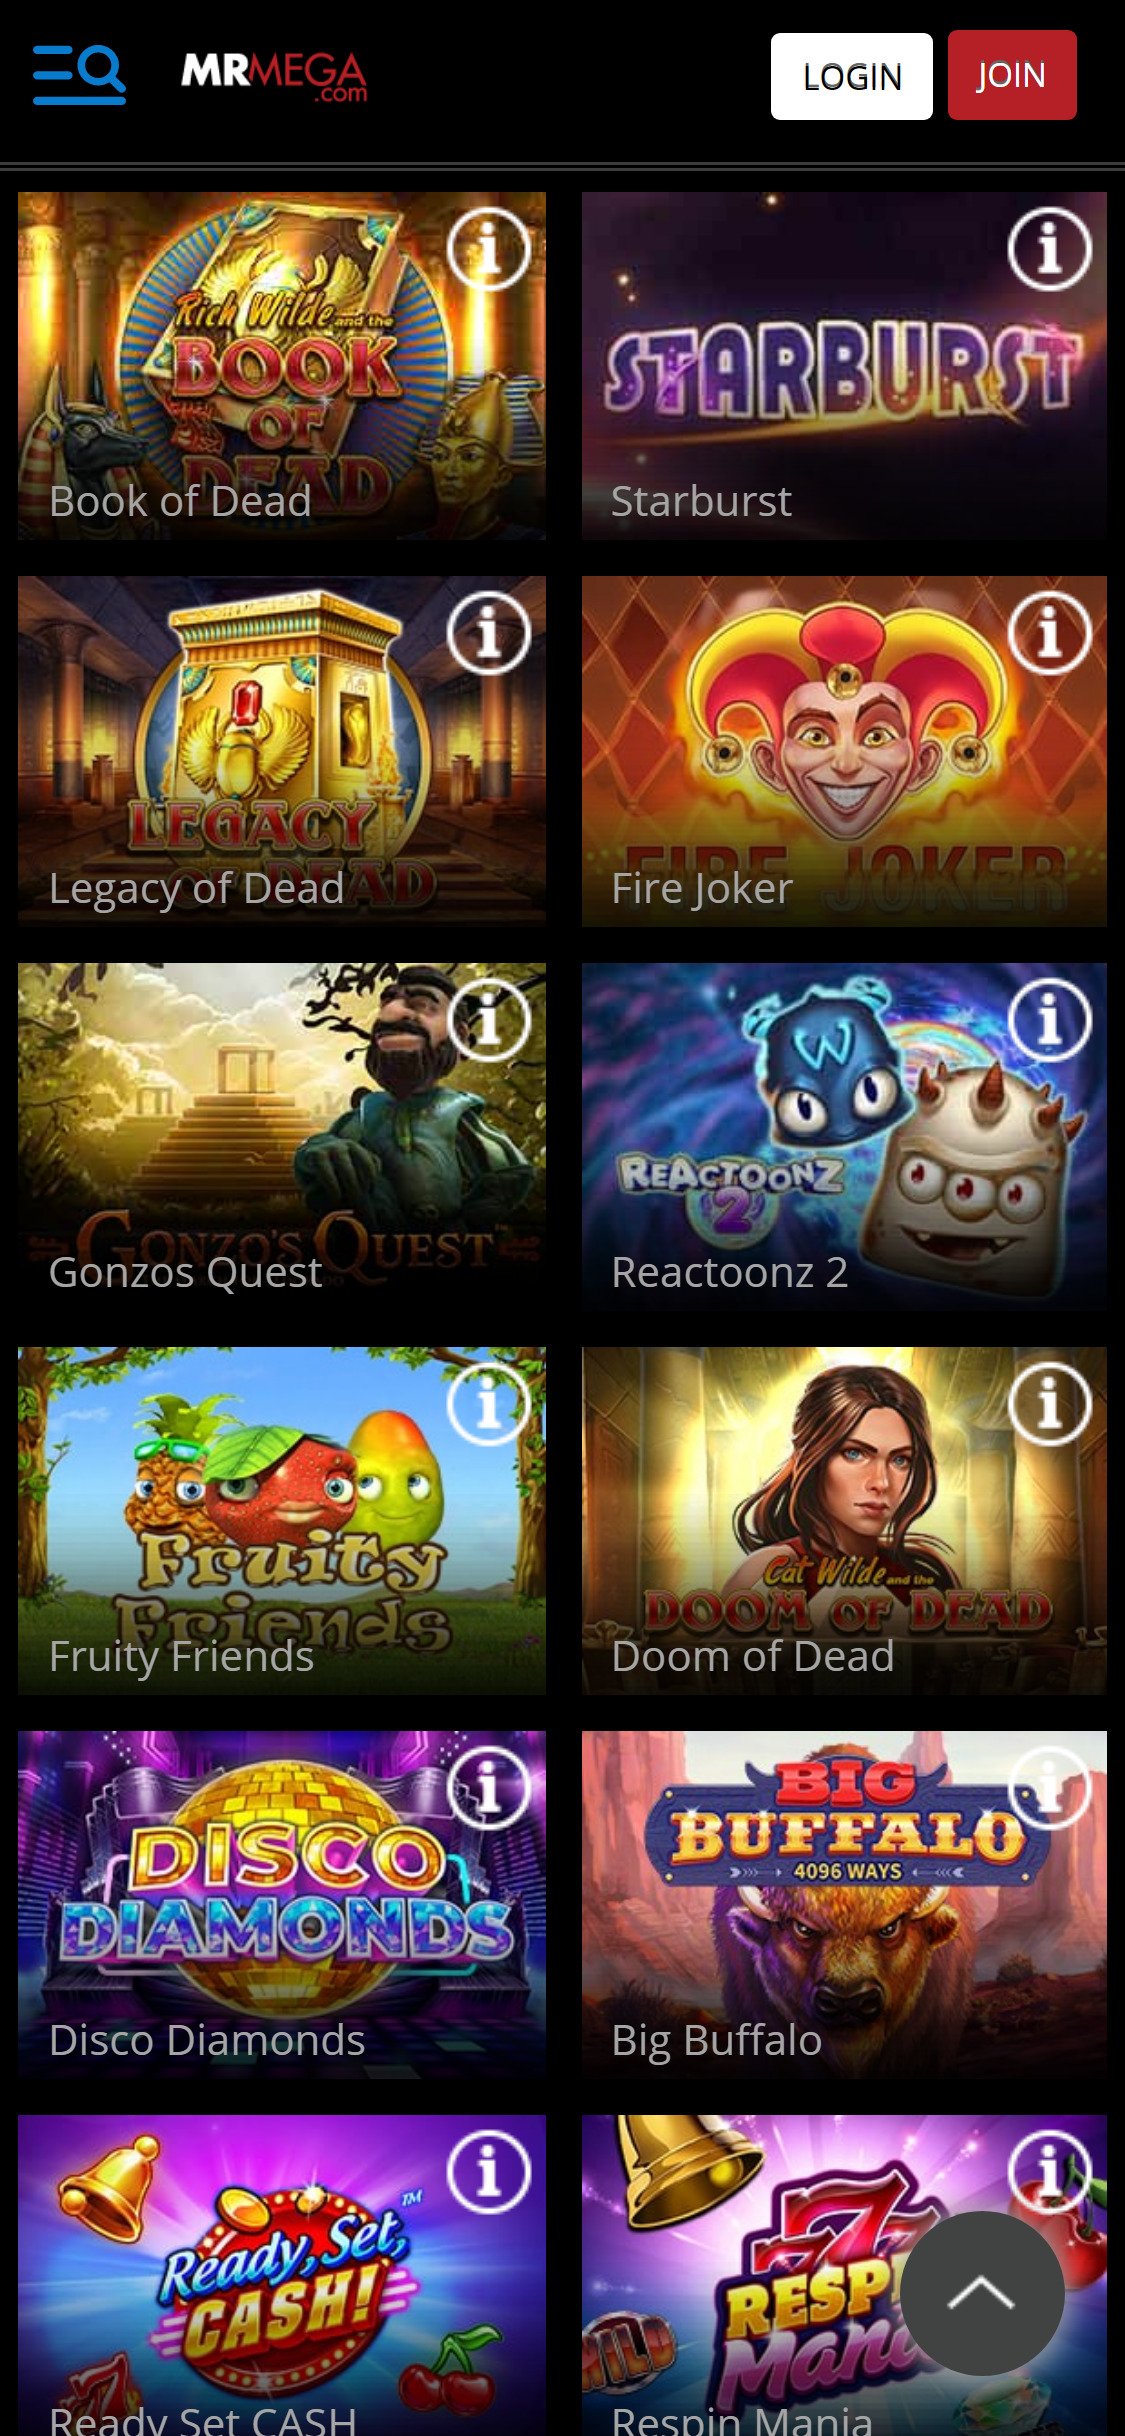 MrMega Casino Mobile Games Review